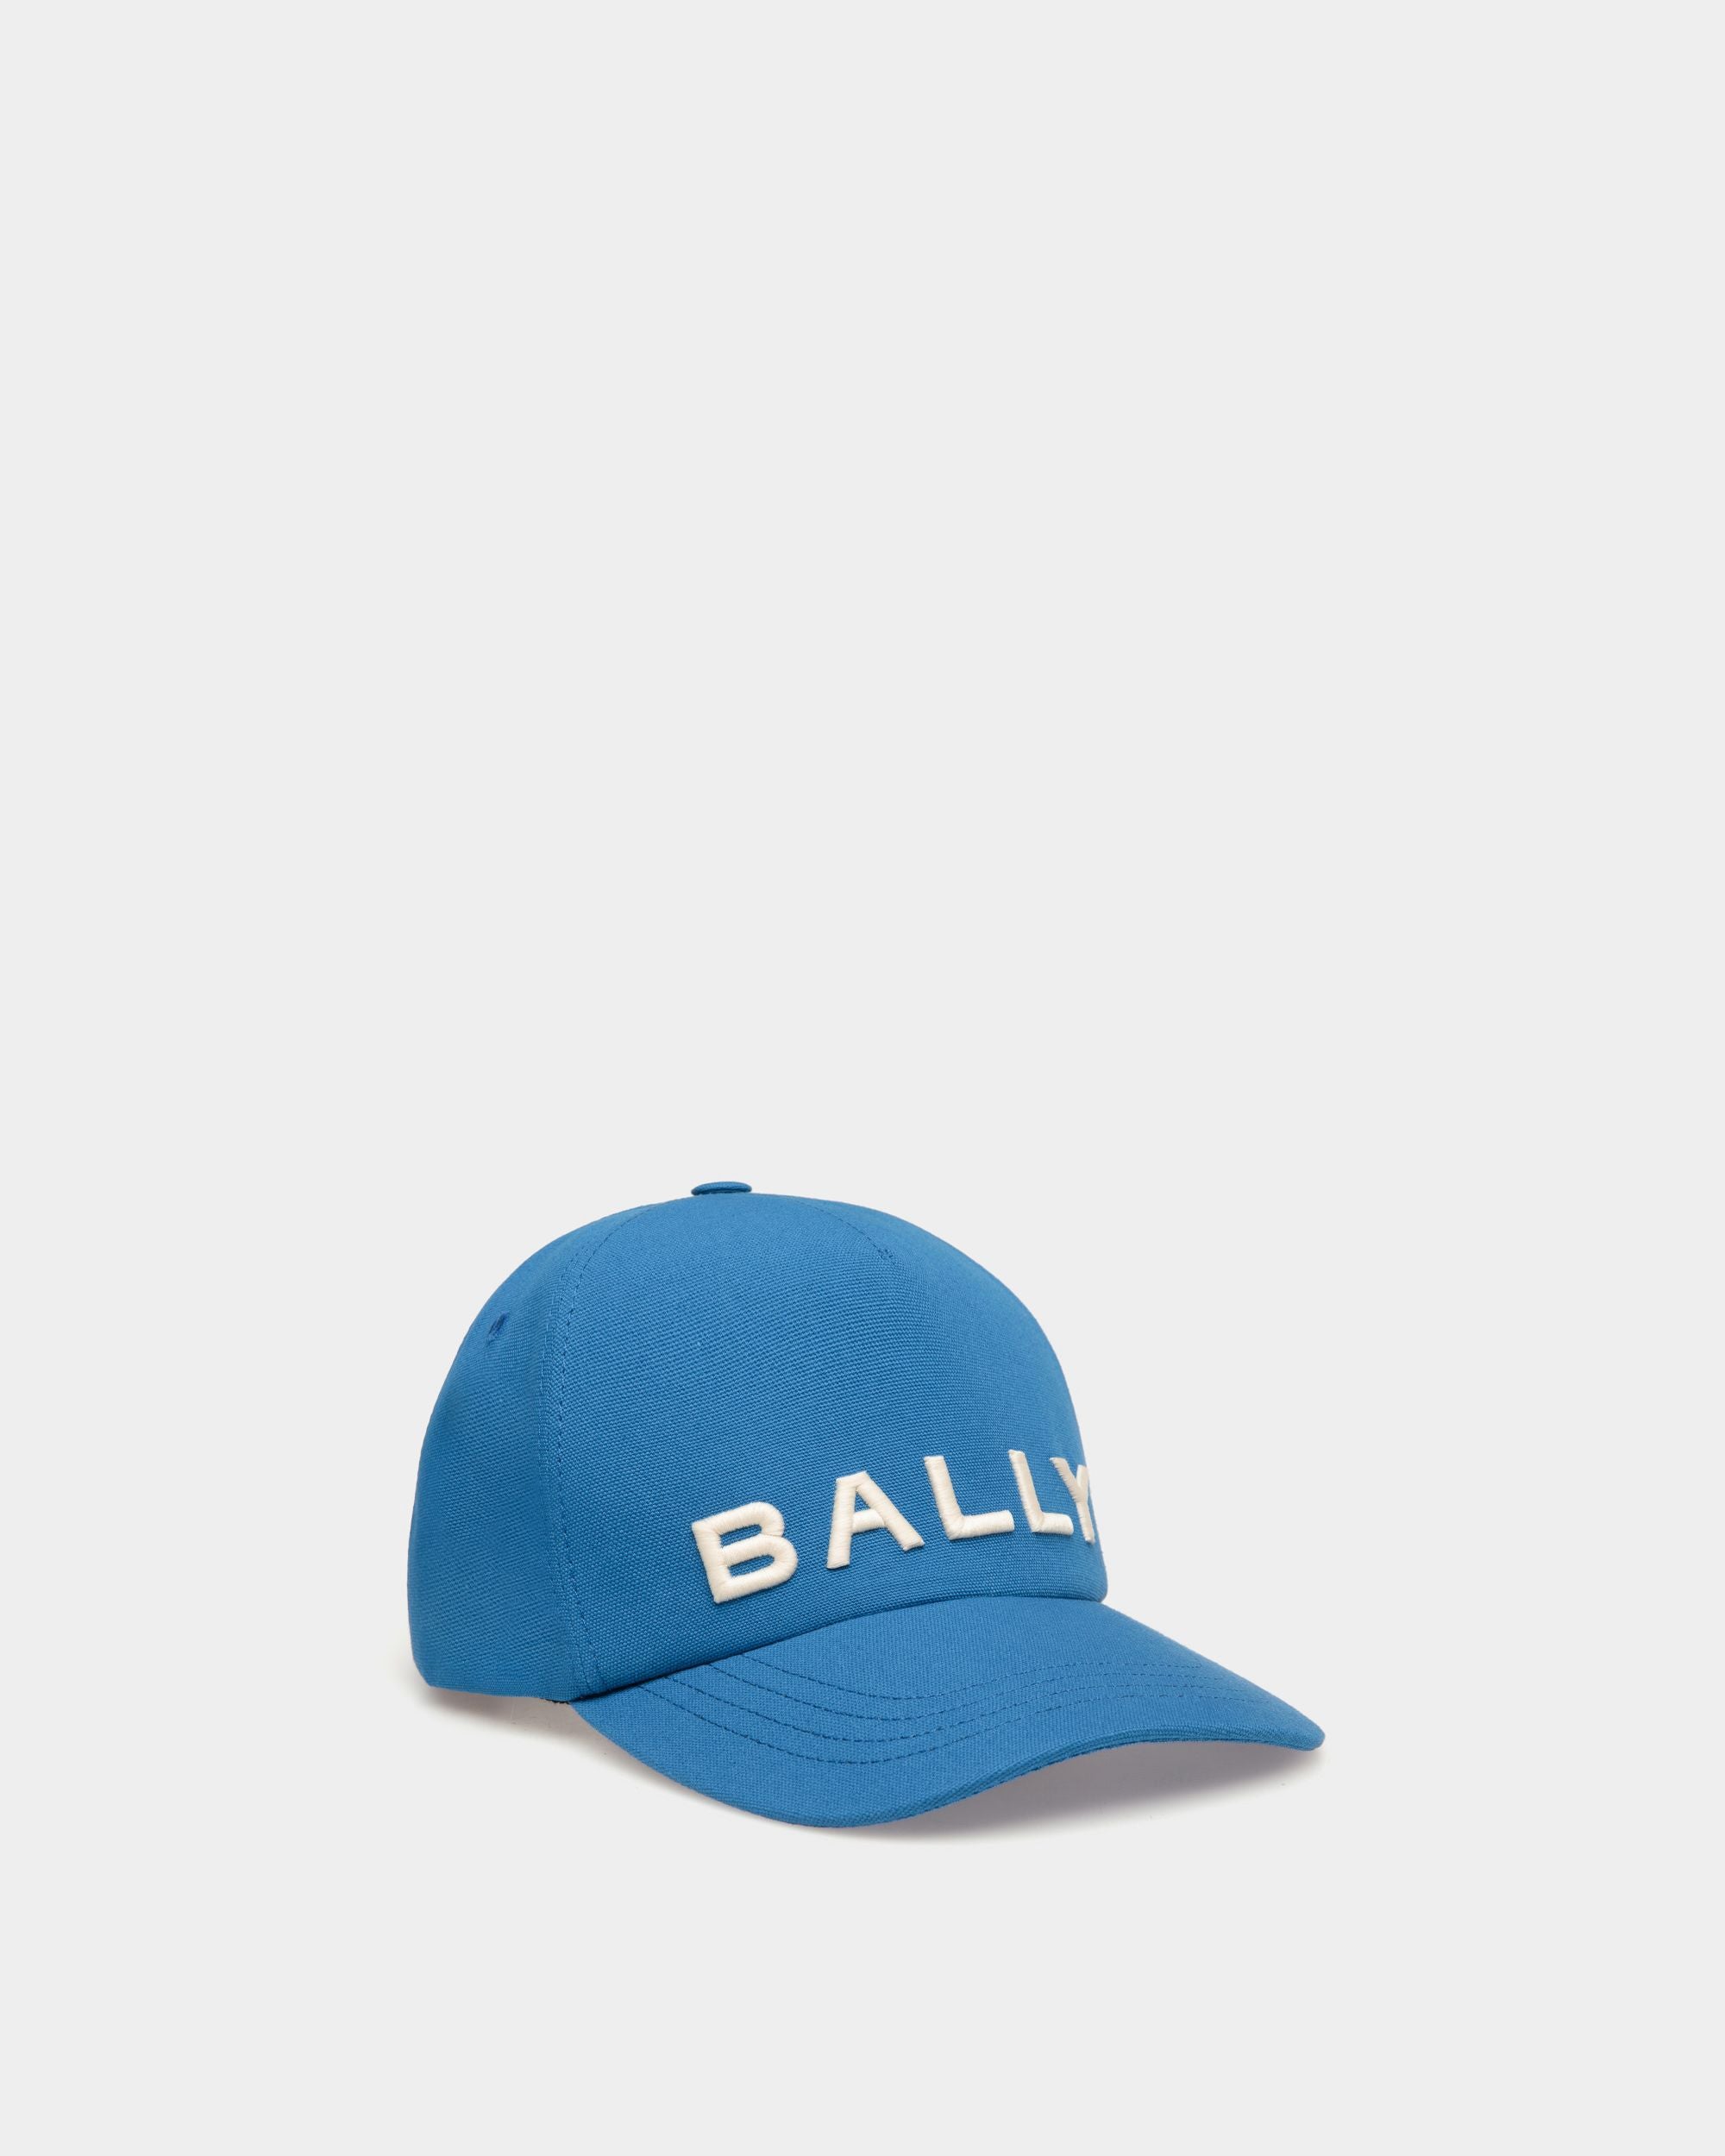 Herren-Baseballmütze aus blauer Baumwolle | Bally | Still Life Vorderseite